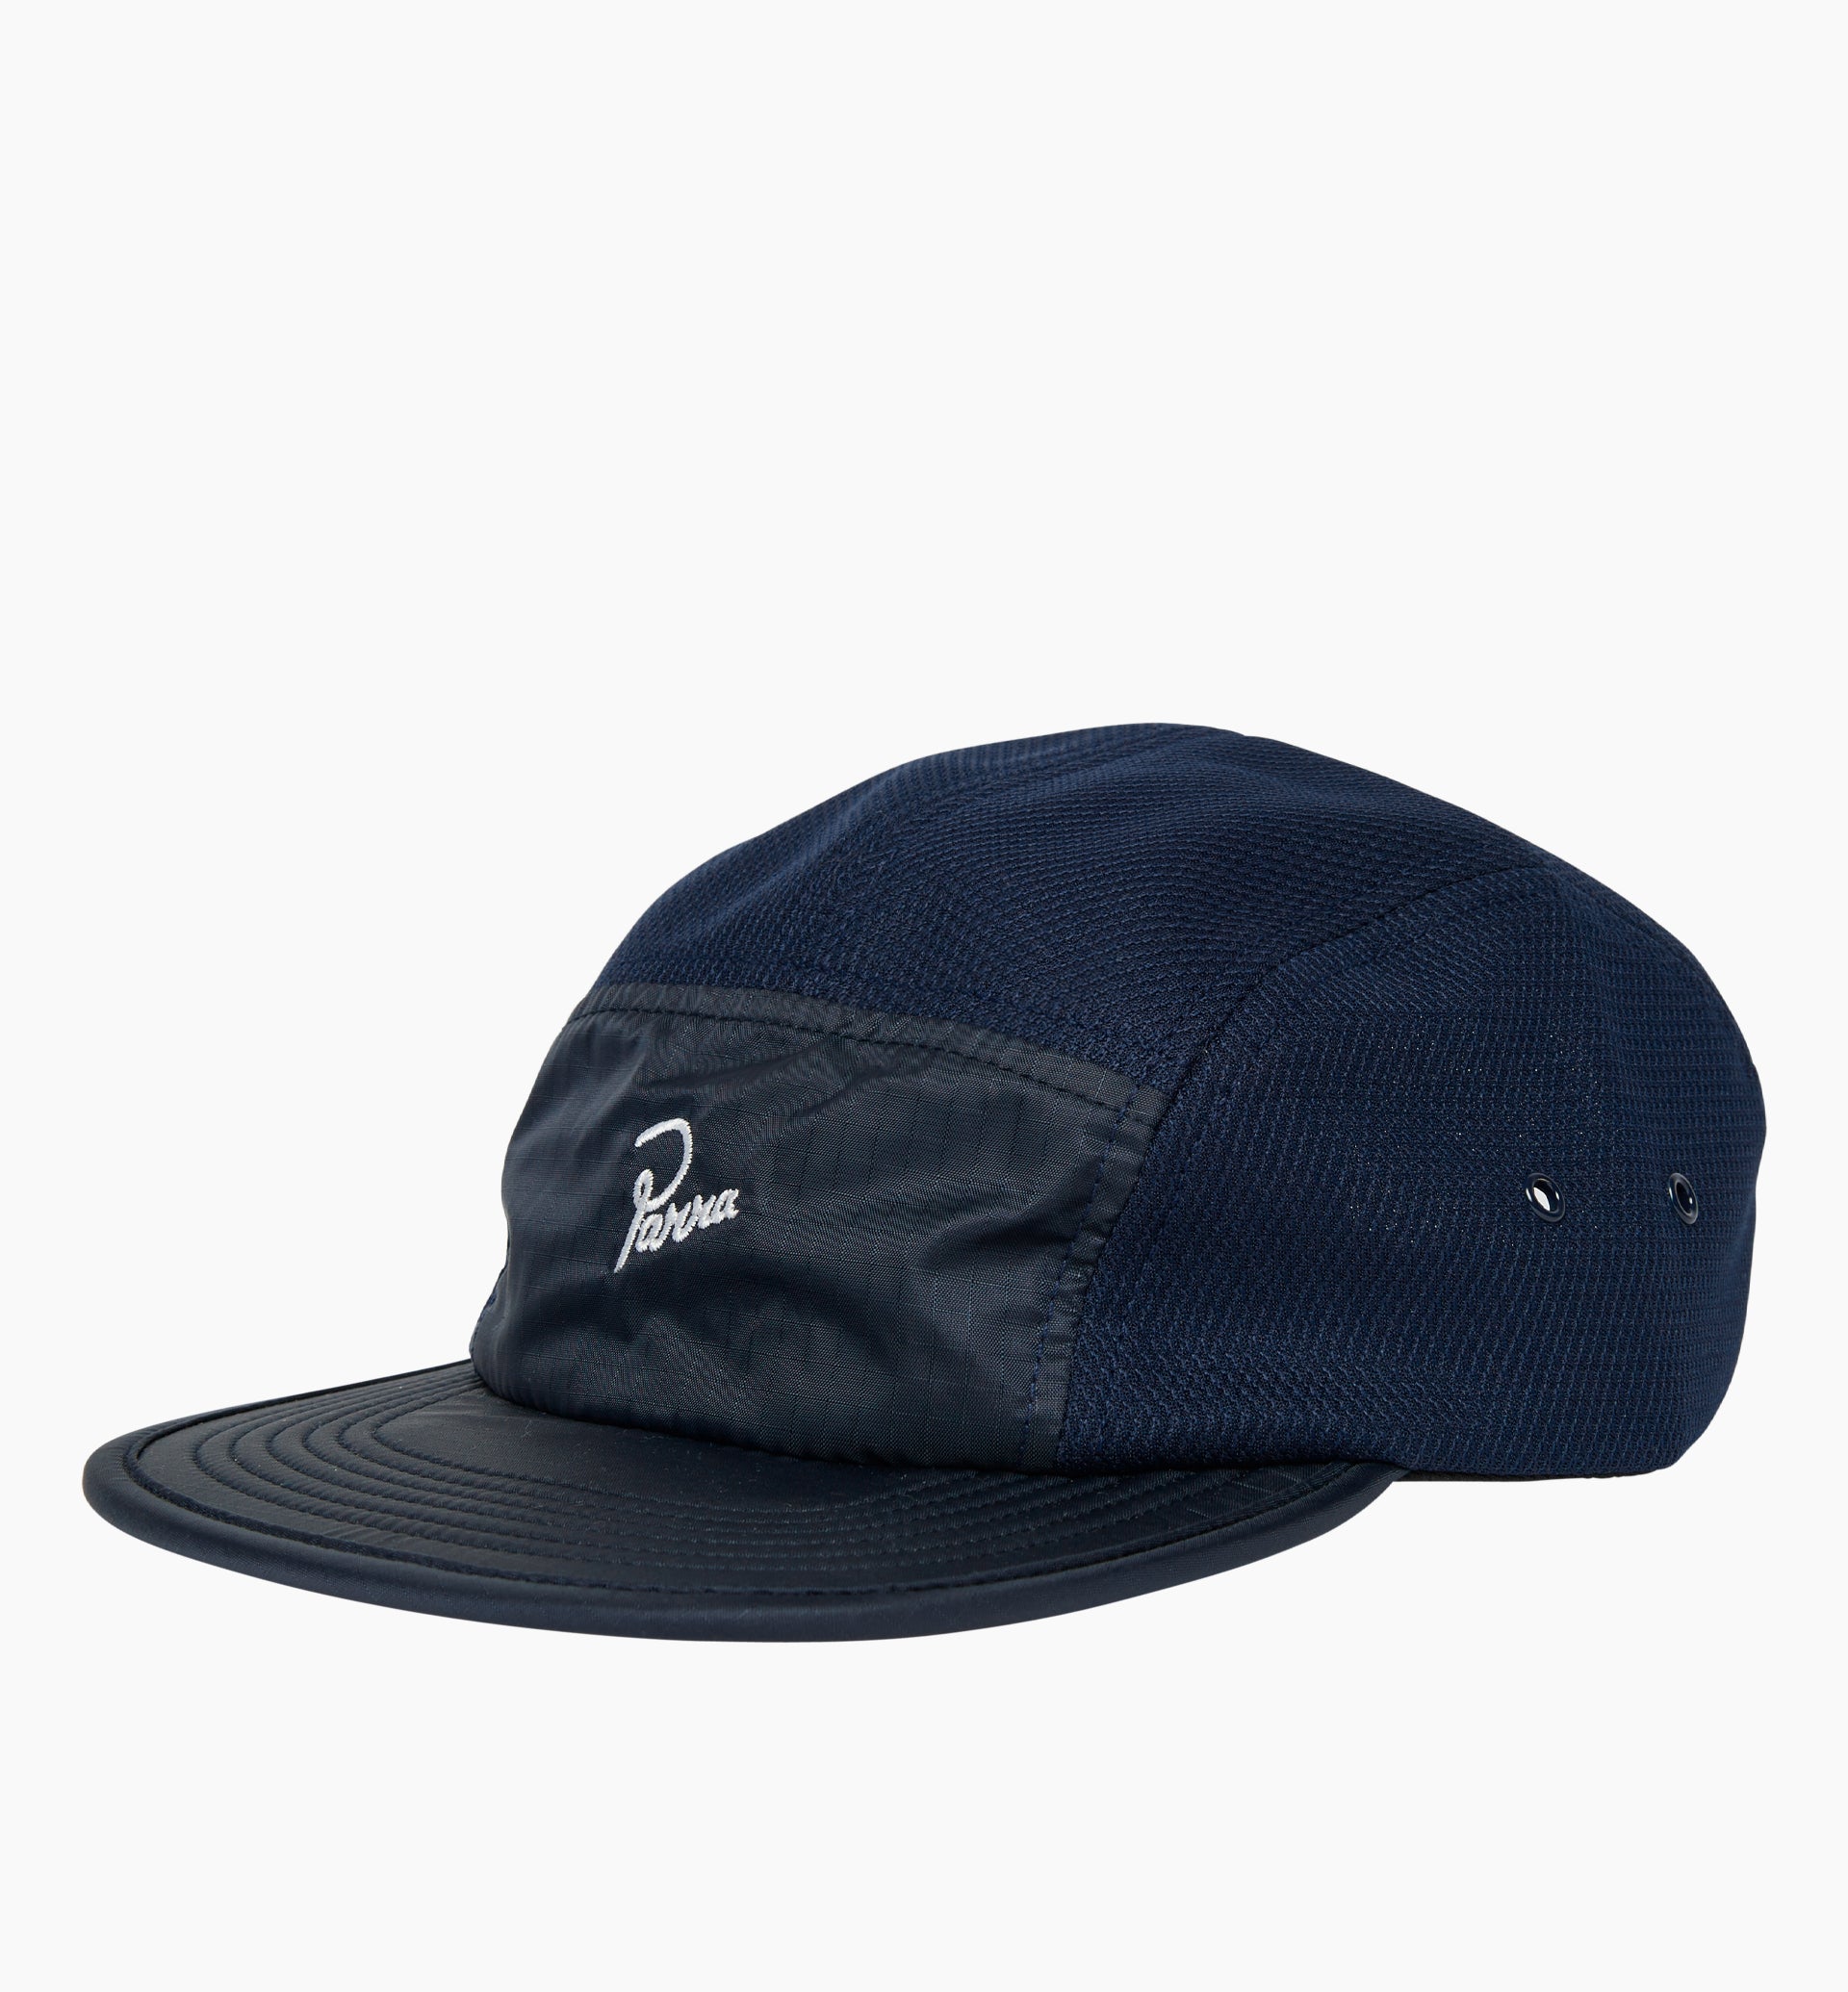 Parra - classic logo volley hat